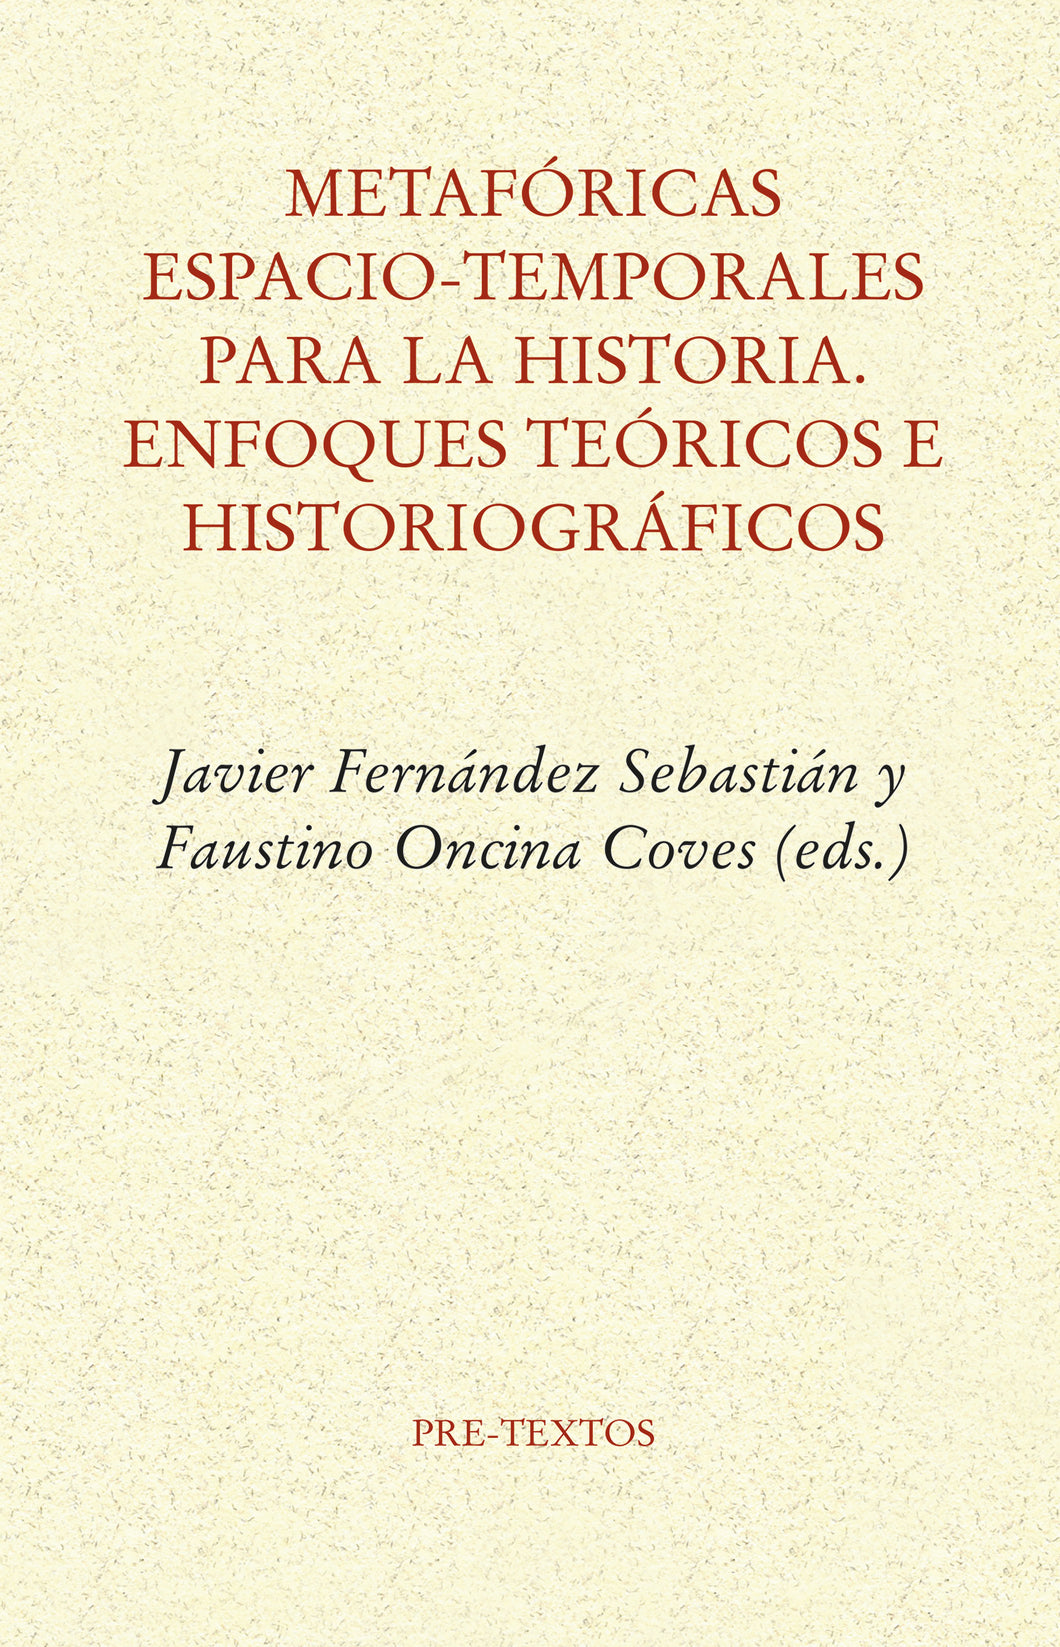 METAFÓRICAS ESPACIO-TEMPORALES PARA LA HISTORIA. ENFOQUES TEÓRICOS E HISTORIOGRÁFICOS - Javier Fernández Sebastián y Faustino Oncina Coves (eds.)